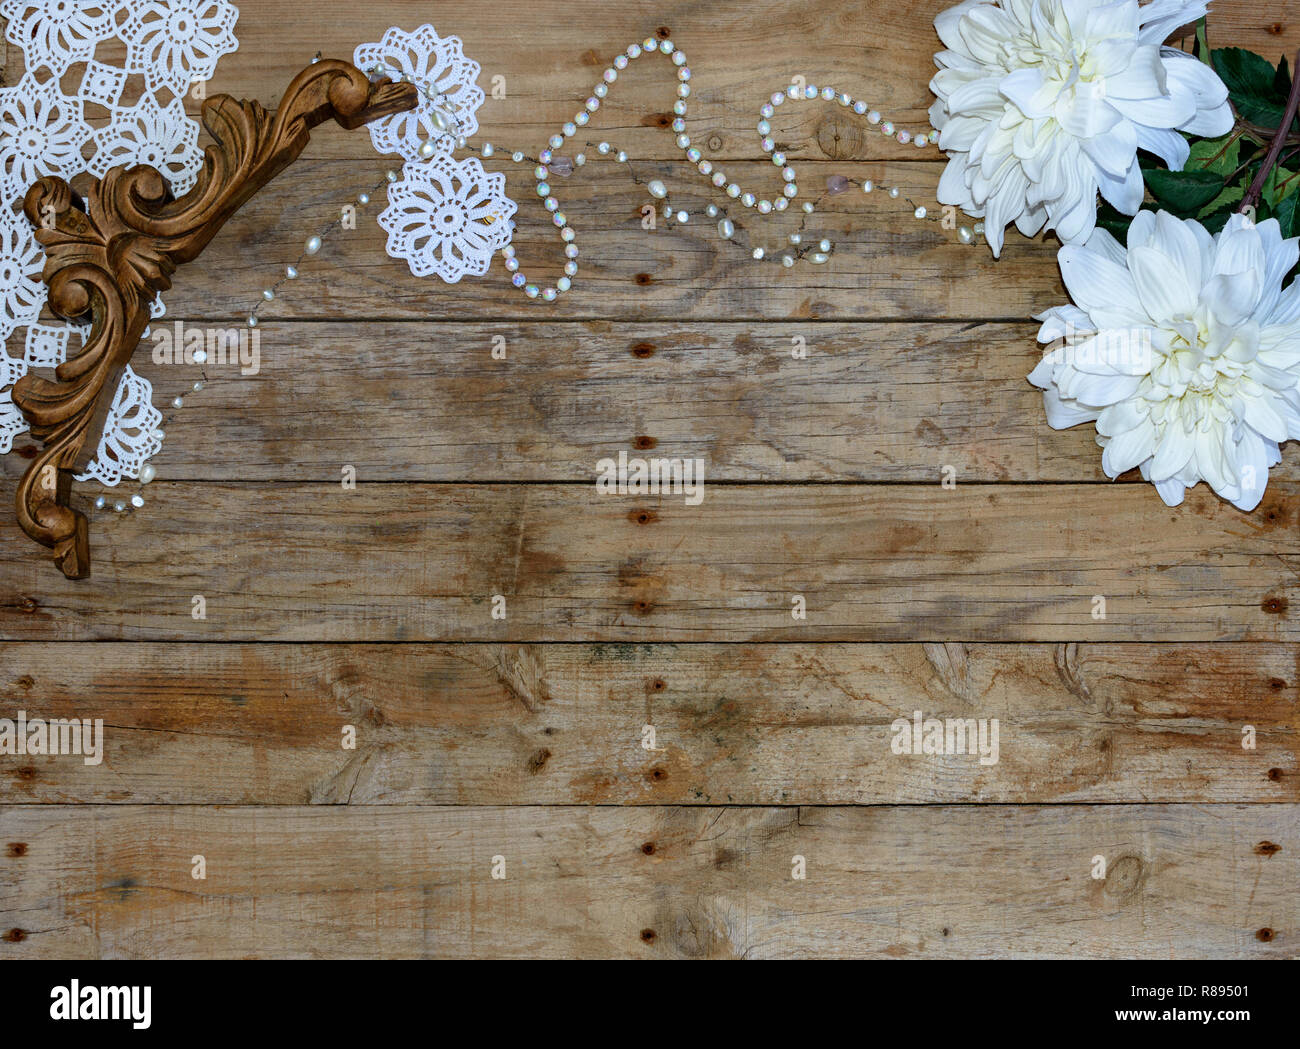 Weihnachten Postkarte Rahmen Holz- Hintergrund. Für die Grußkarte. Xmas Wallpaper, Vintage Holz- und weiße Objekte. Stockfoto